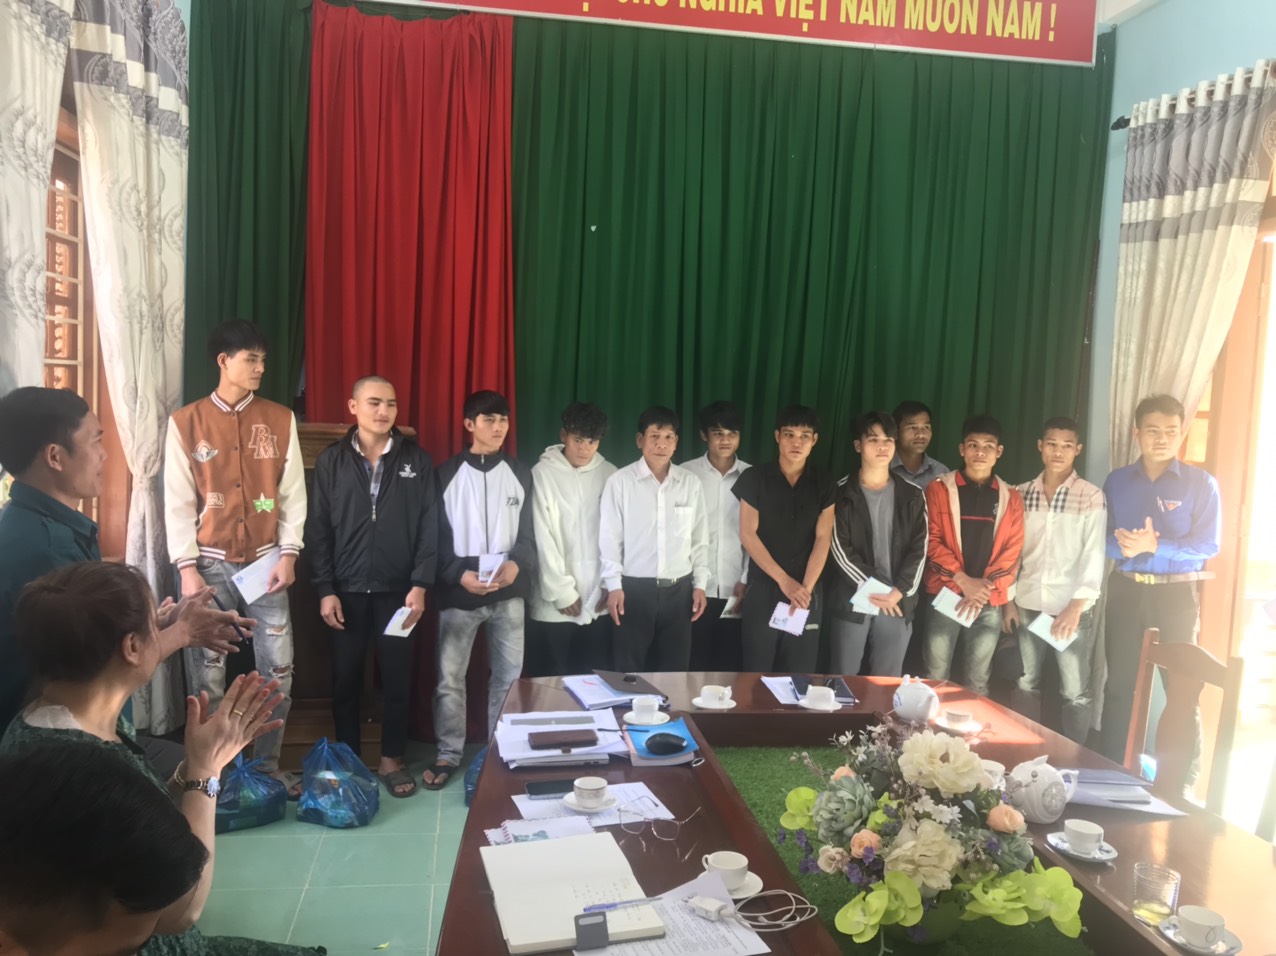 Sơn Long tổ chức gặp mặt những thanh niên ưu tú trước khi lên đường nhập ngũ năm 2023